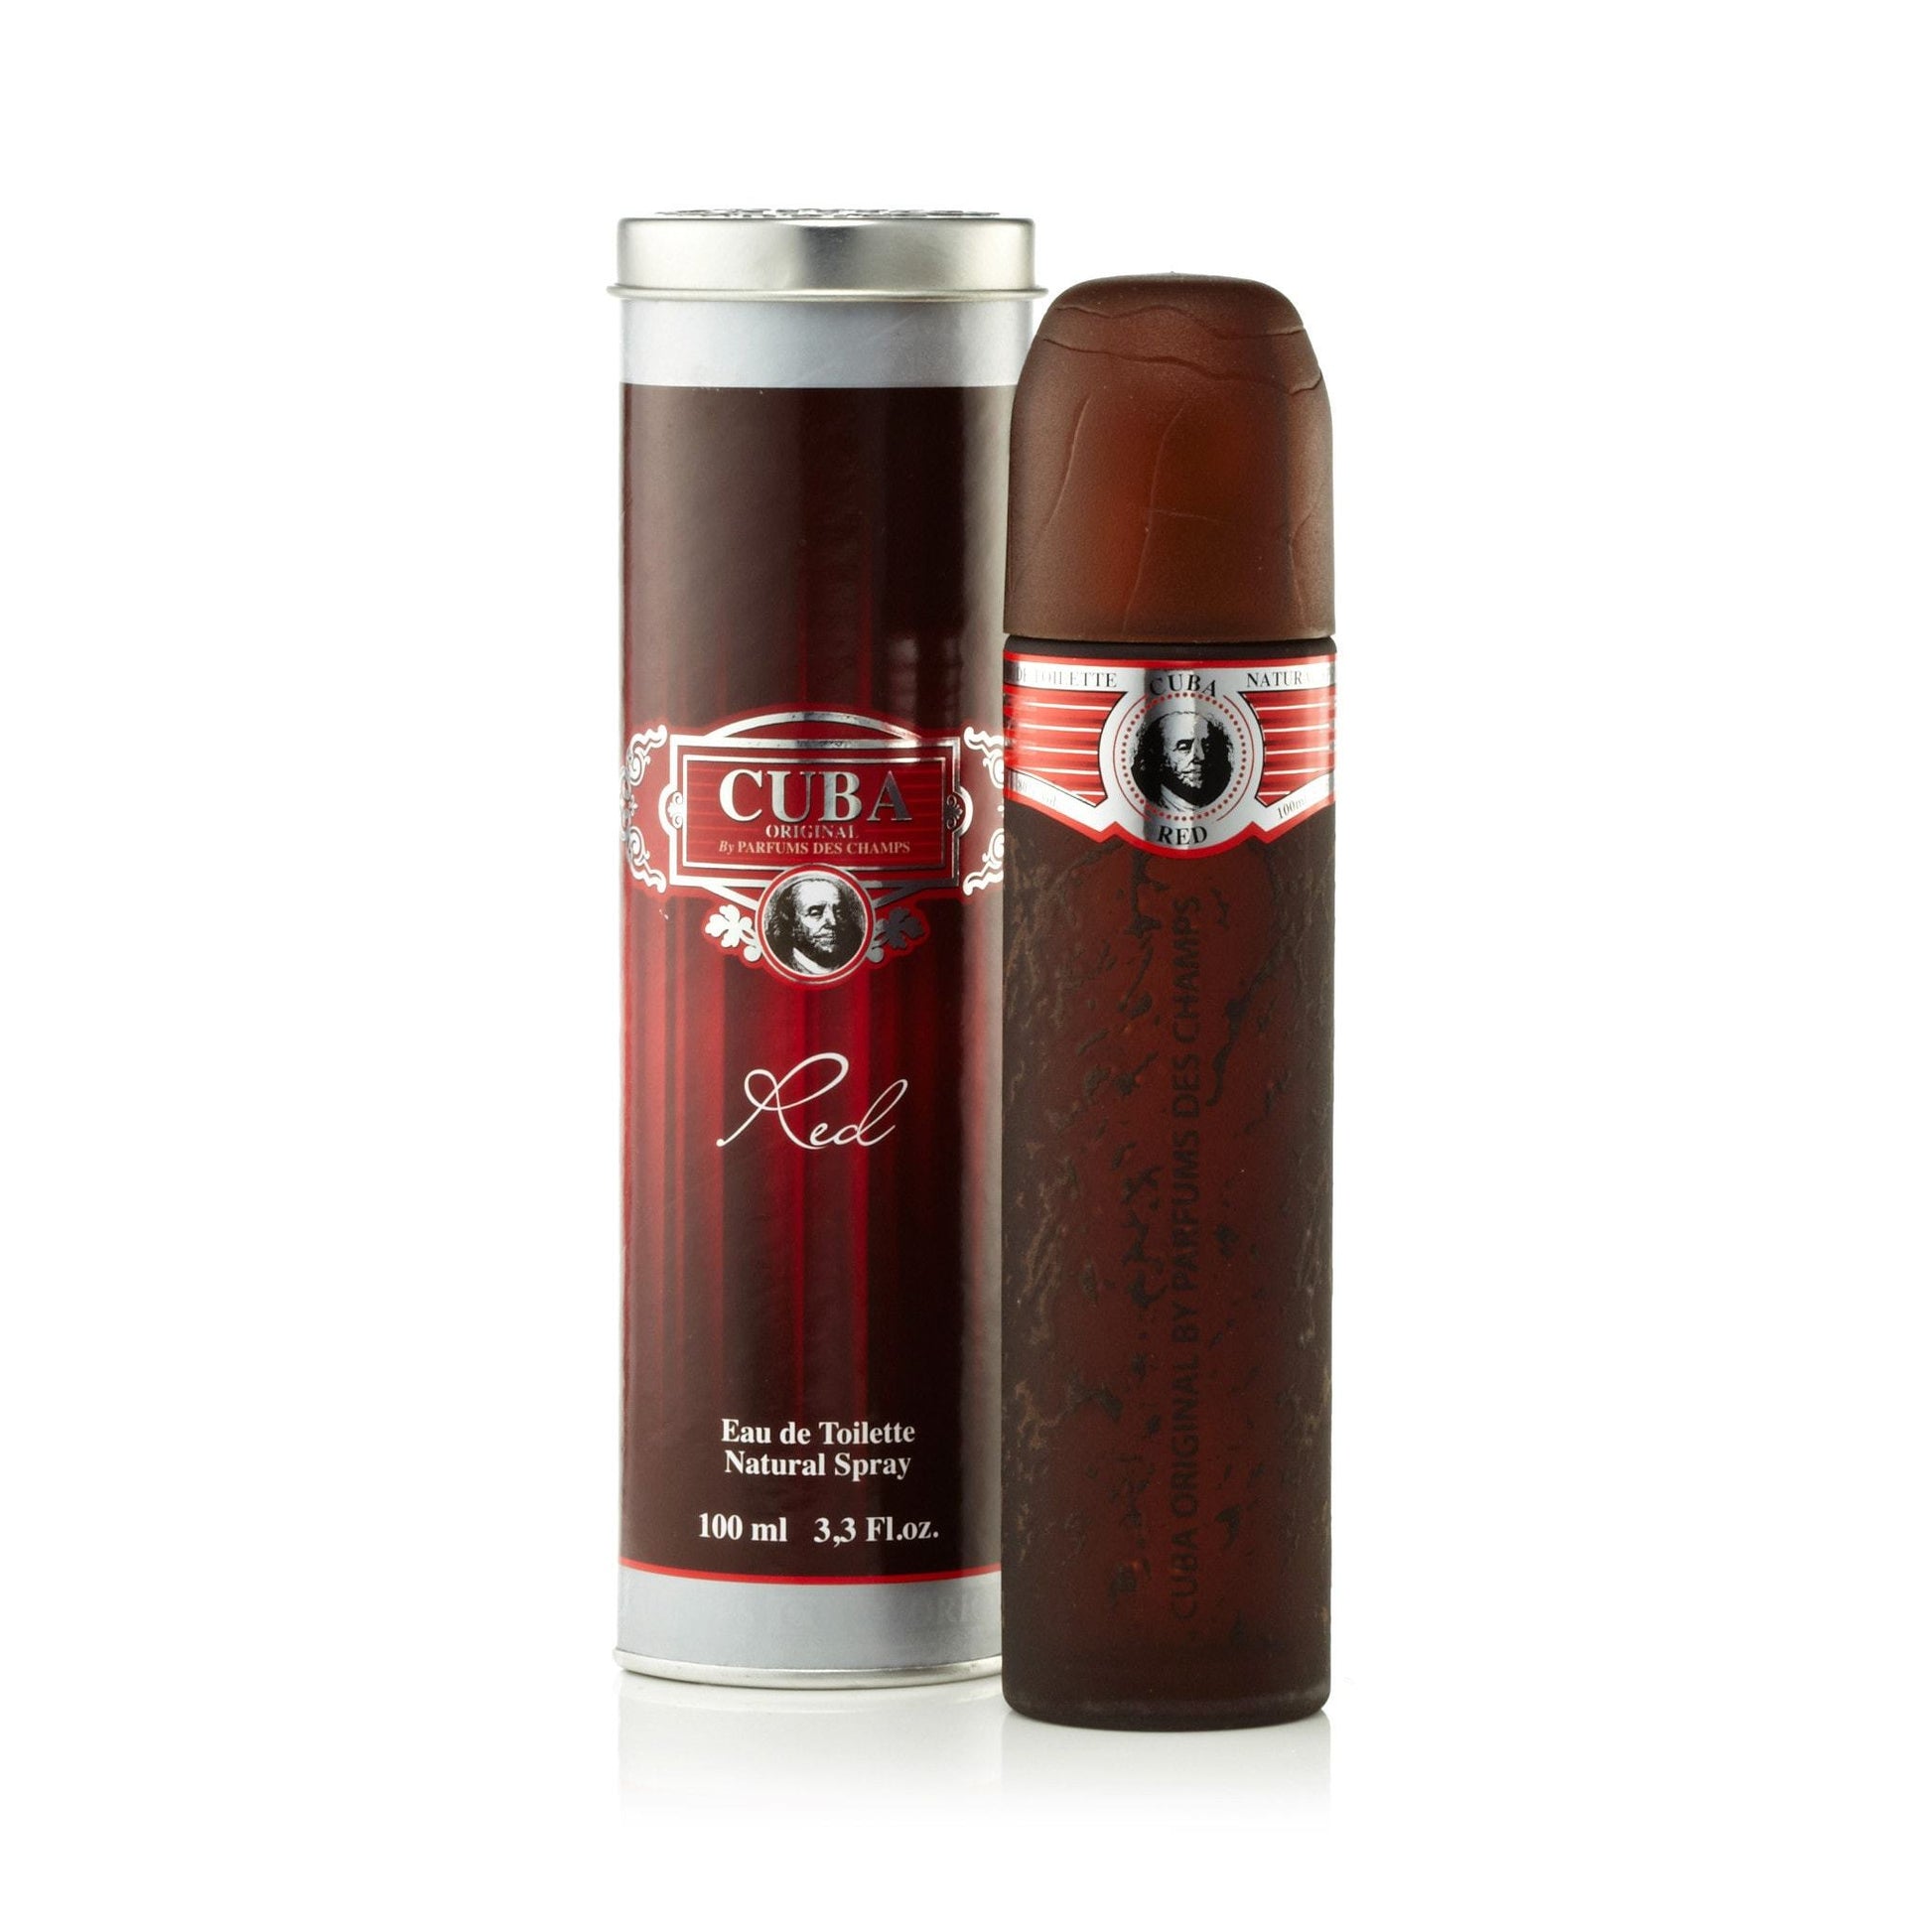 Red Eau de Toilette Spray for Men by Cuba, Product image 1